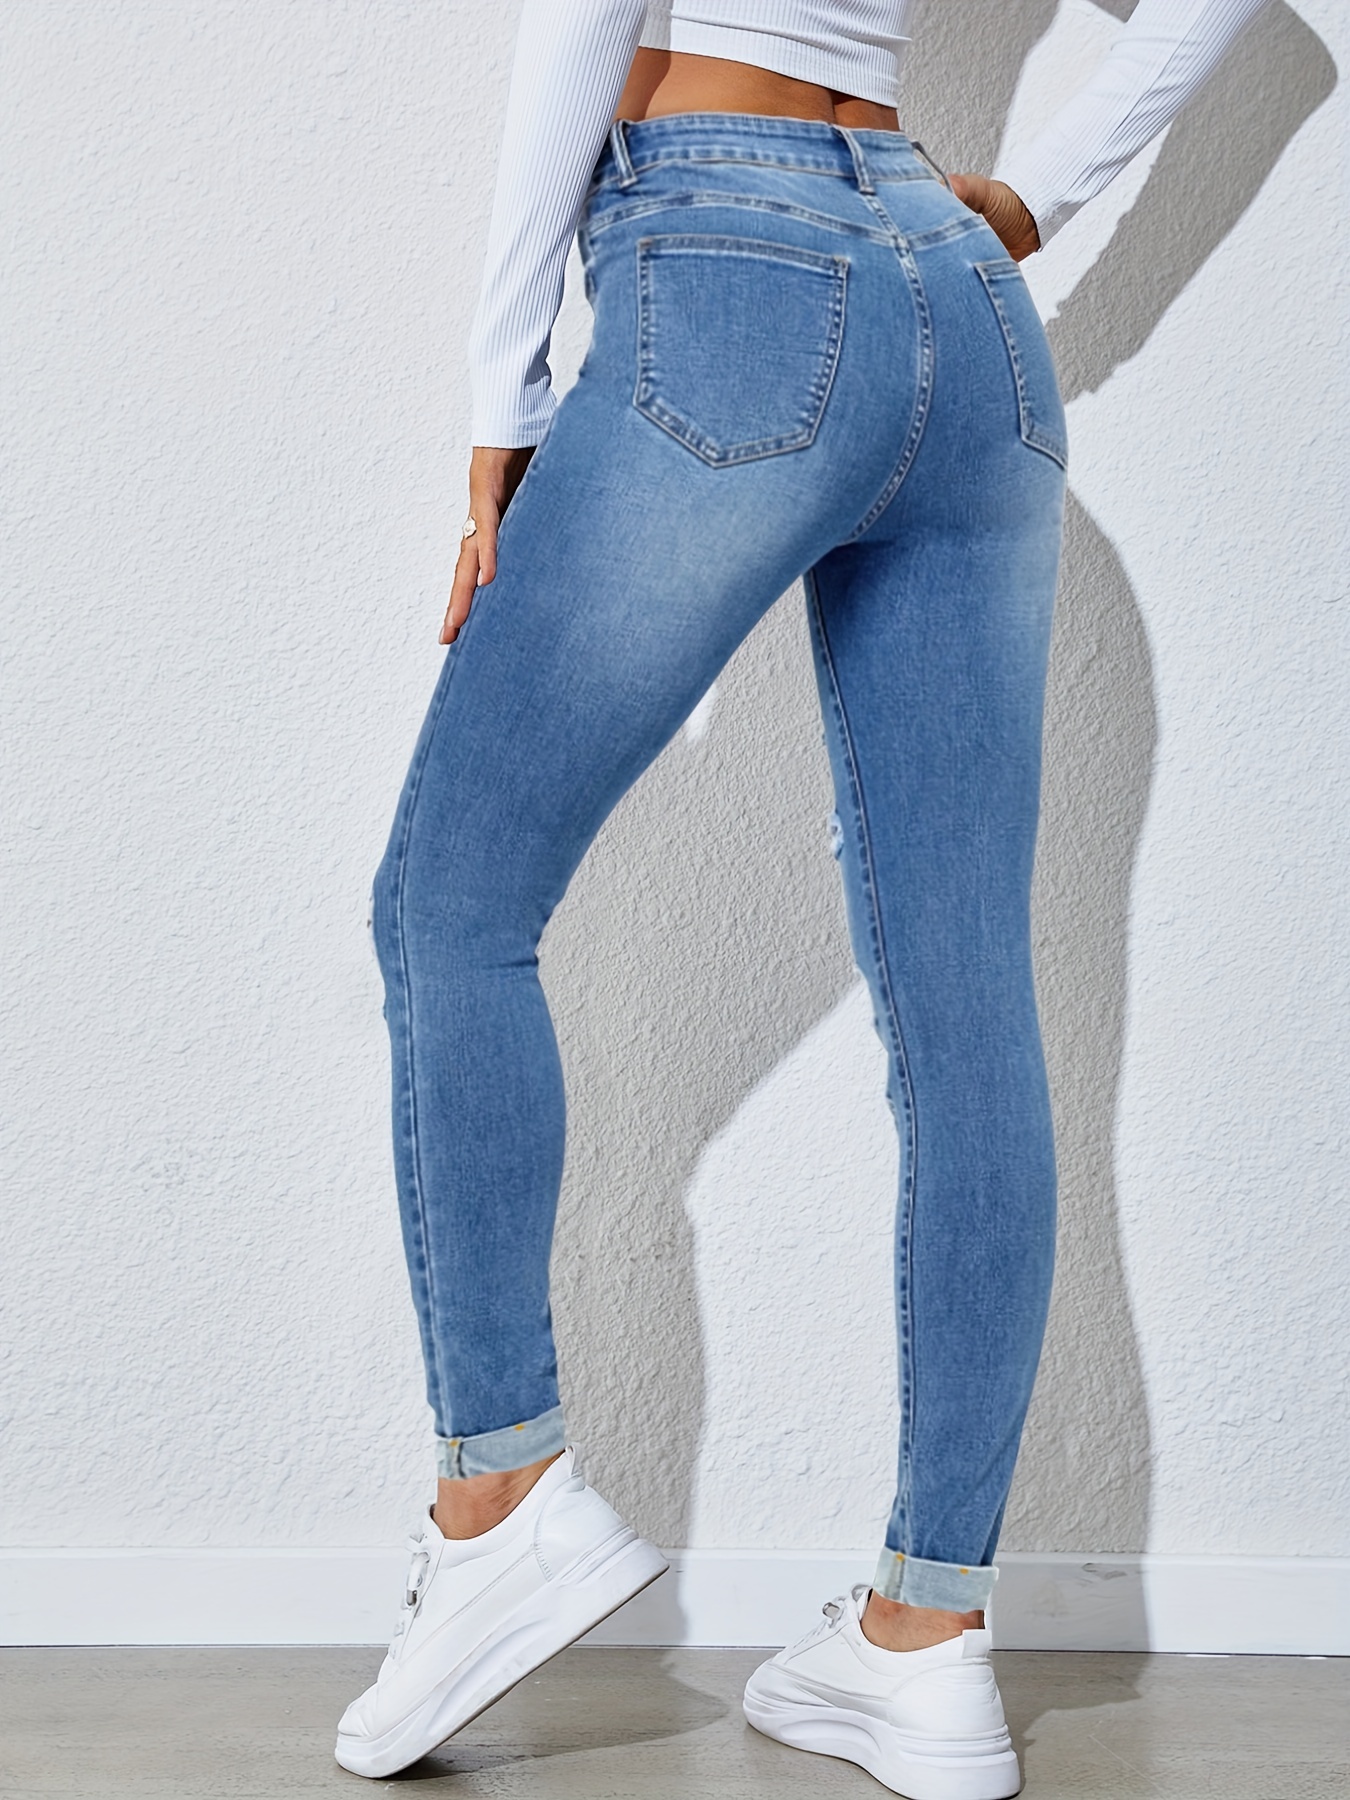 Jeans Pantalón De Mezclilla Stretch Mujer Pretina Alta (9, Azul Claro) :  : Ropa, Zapatos y Accesorios